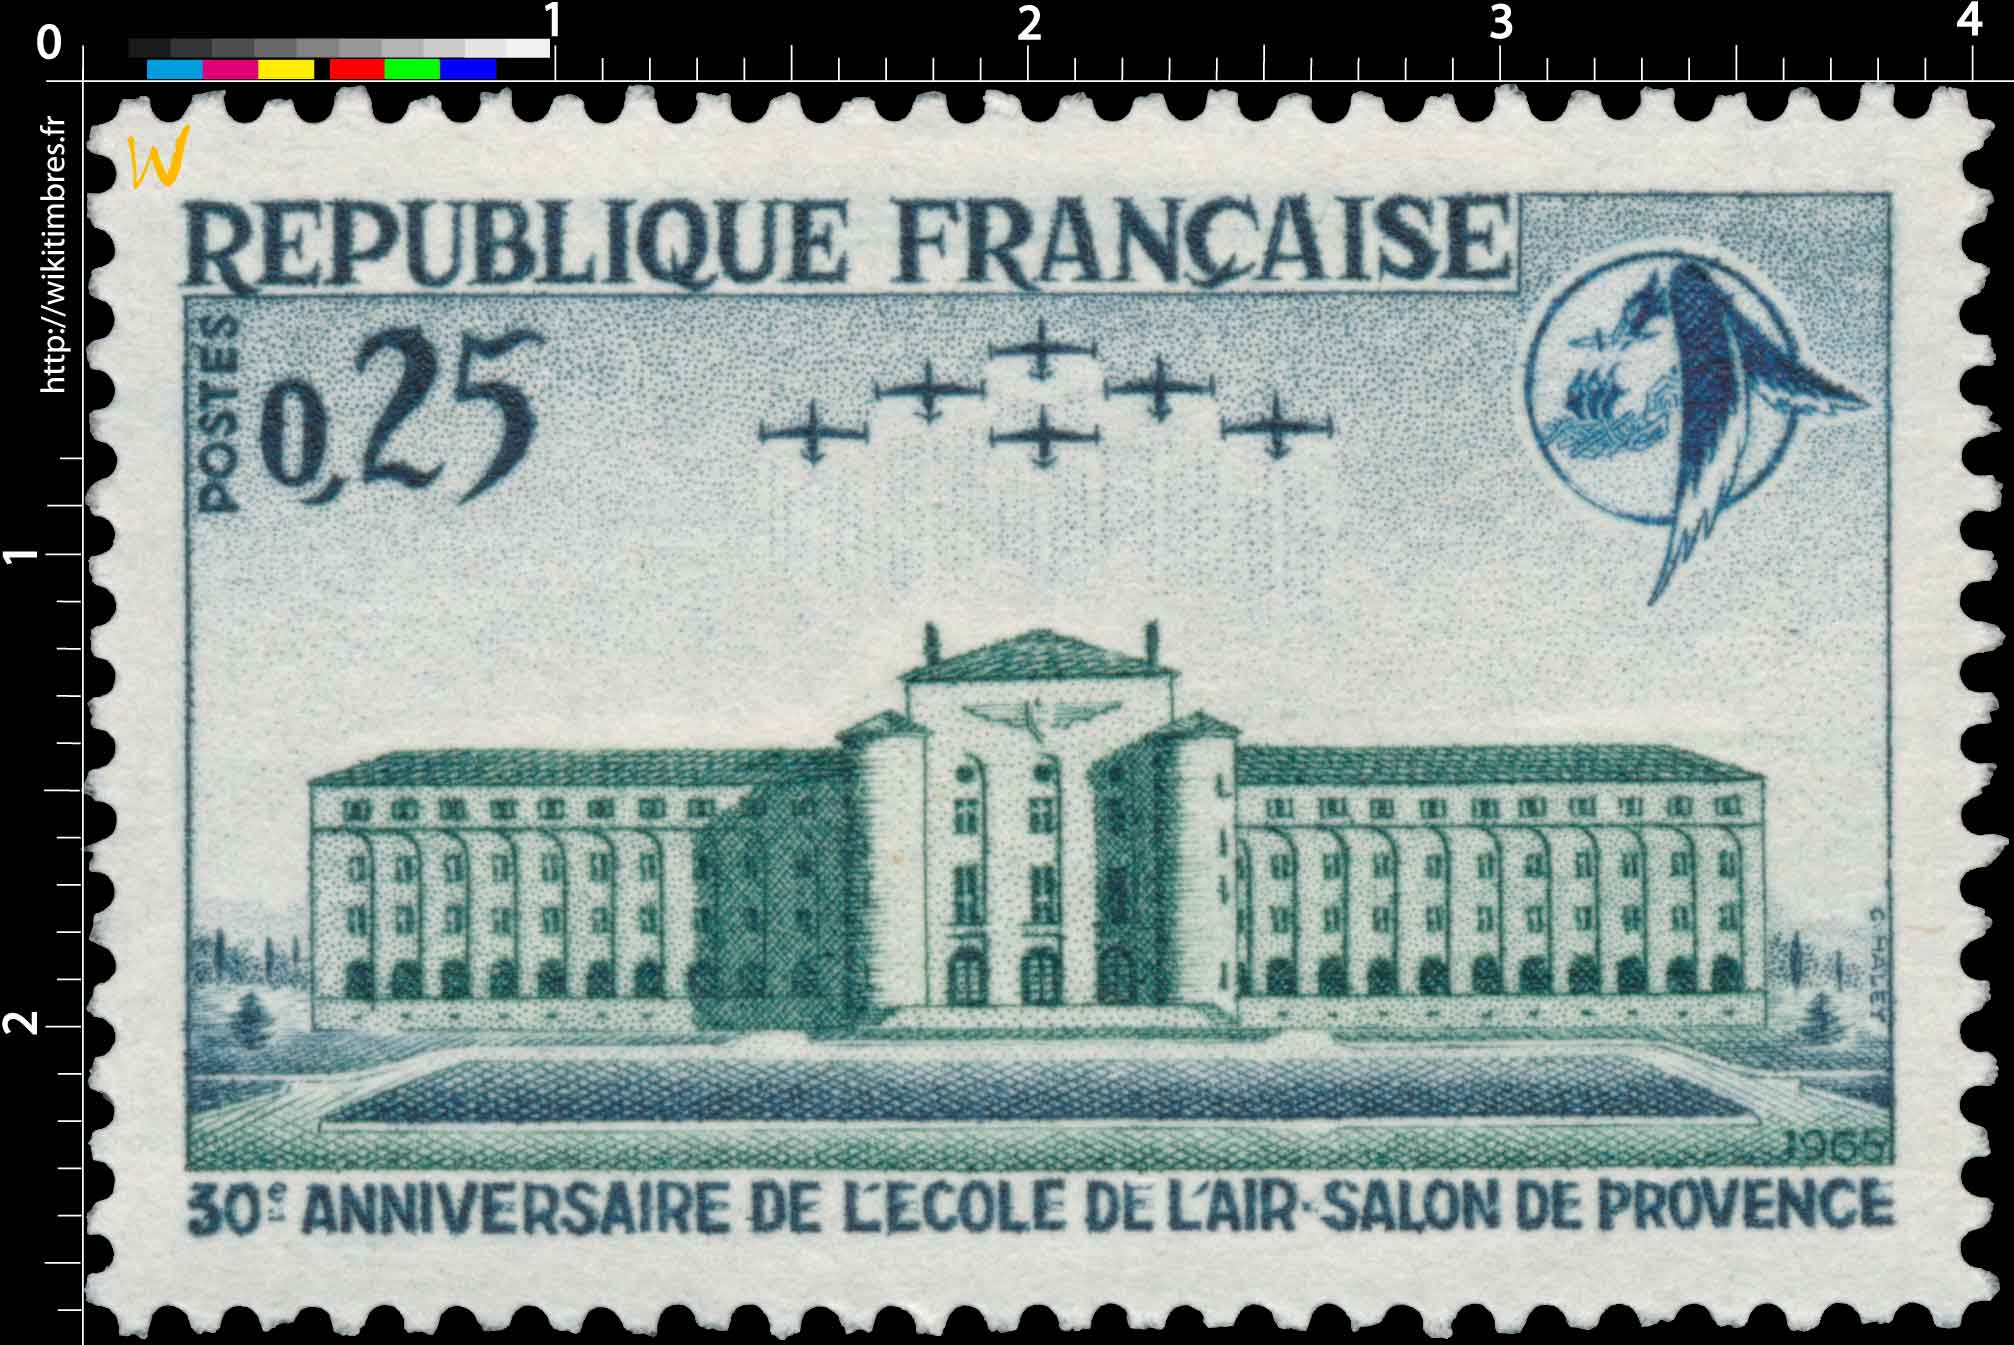 1965 30e ANNIVERSAIRE DE L'ÉCOLE DE L'AIR-SALON DE PROVENCE